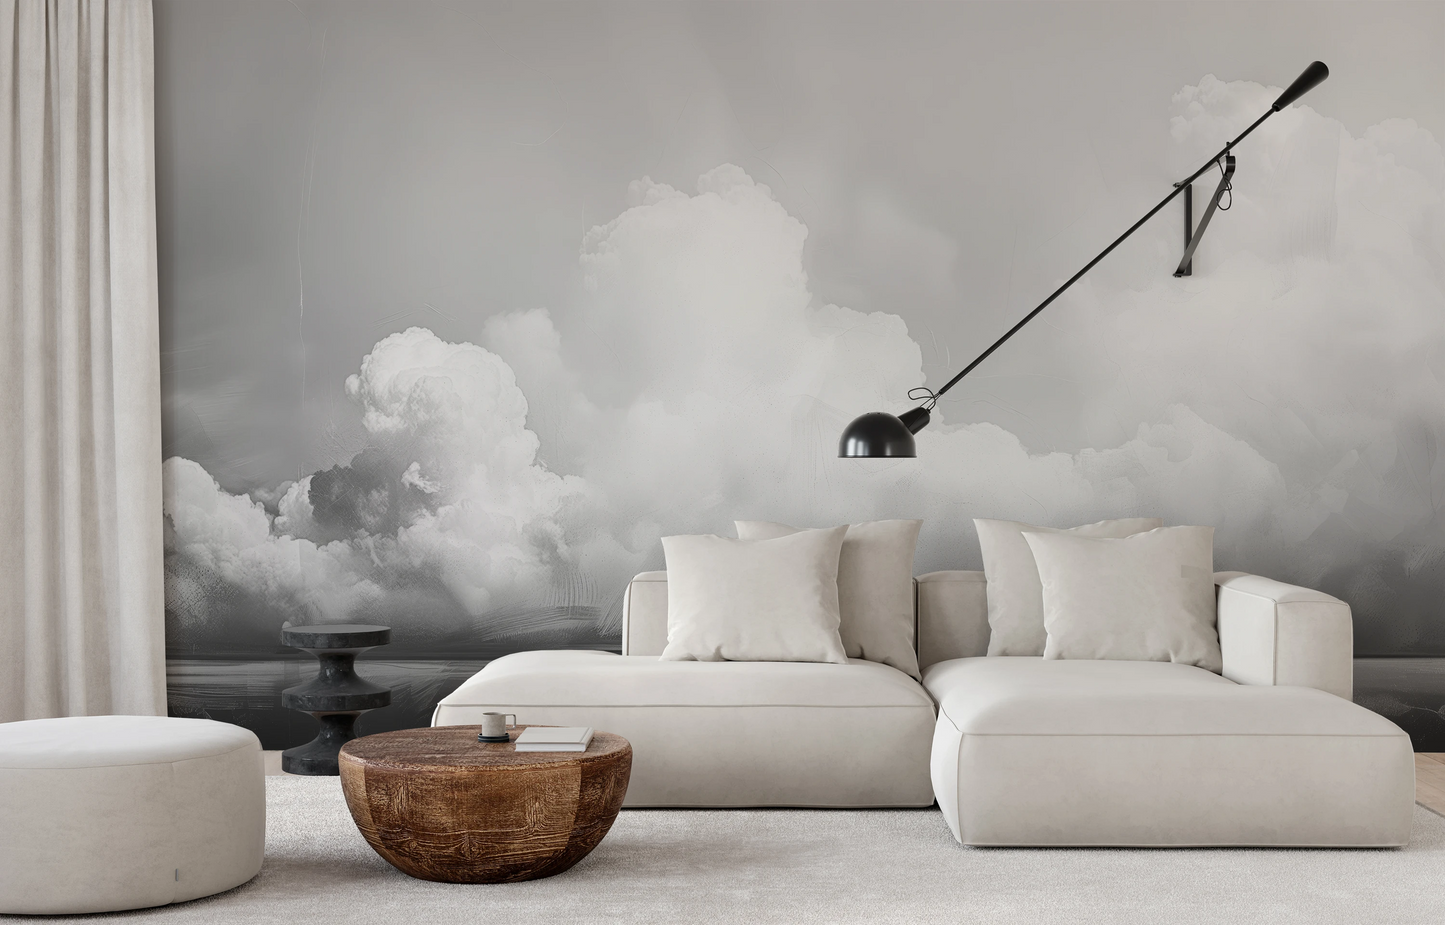 Wzór fototapety artystycznej o nazwie Clouds of Tranquility pokazanej w aranżacji wnętrza.